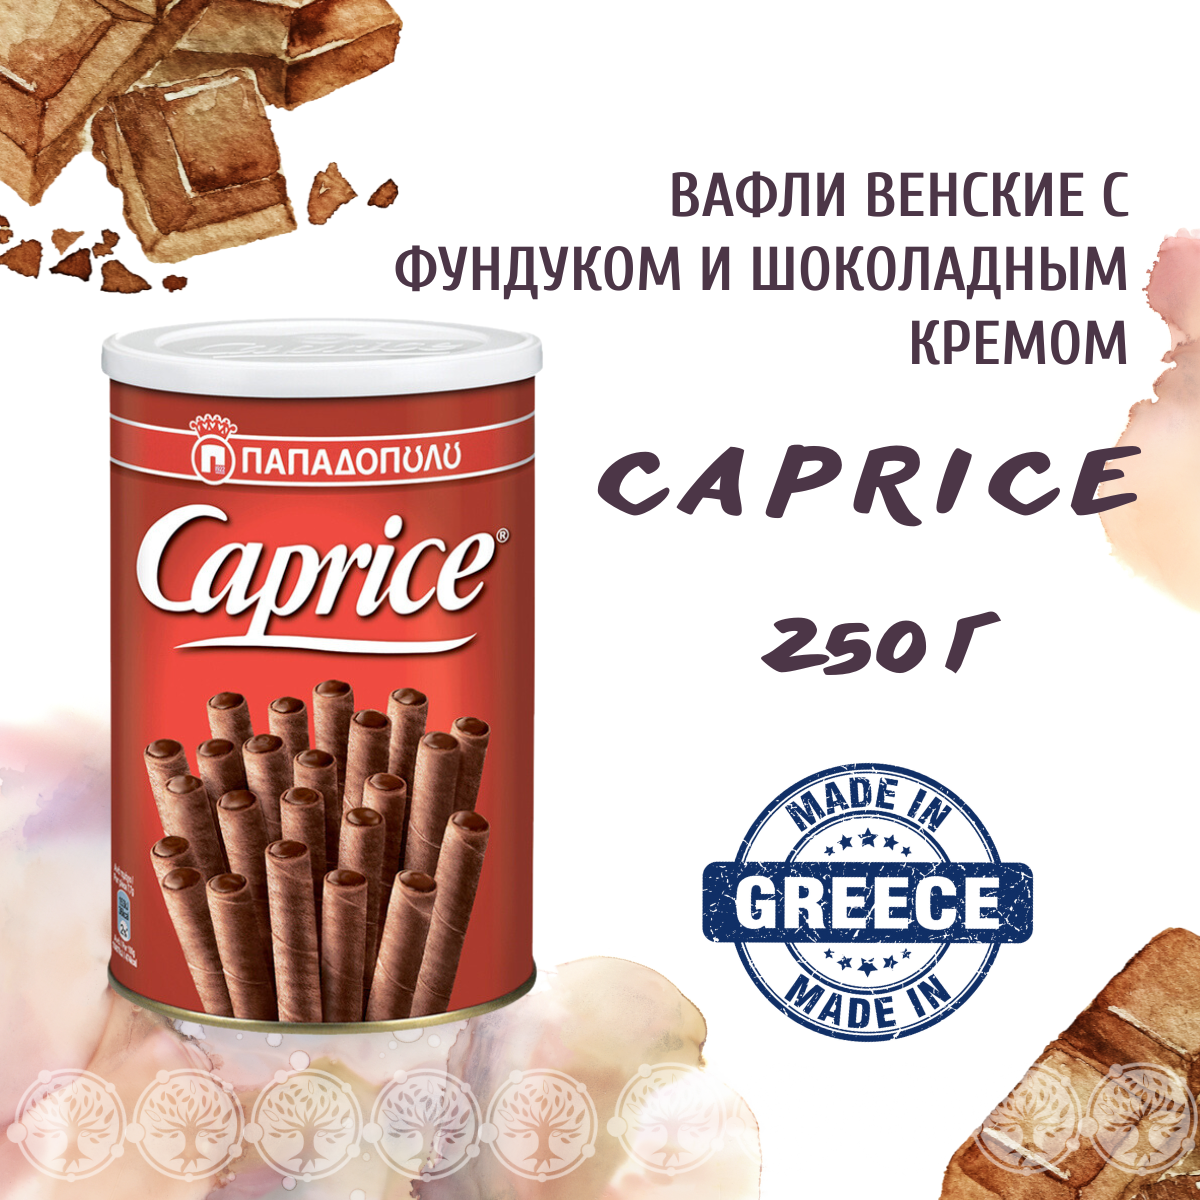 Вафельные трубочки Caprice с фундуком и шоколадным кремом, 250 г